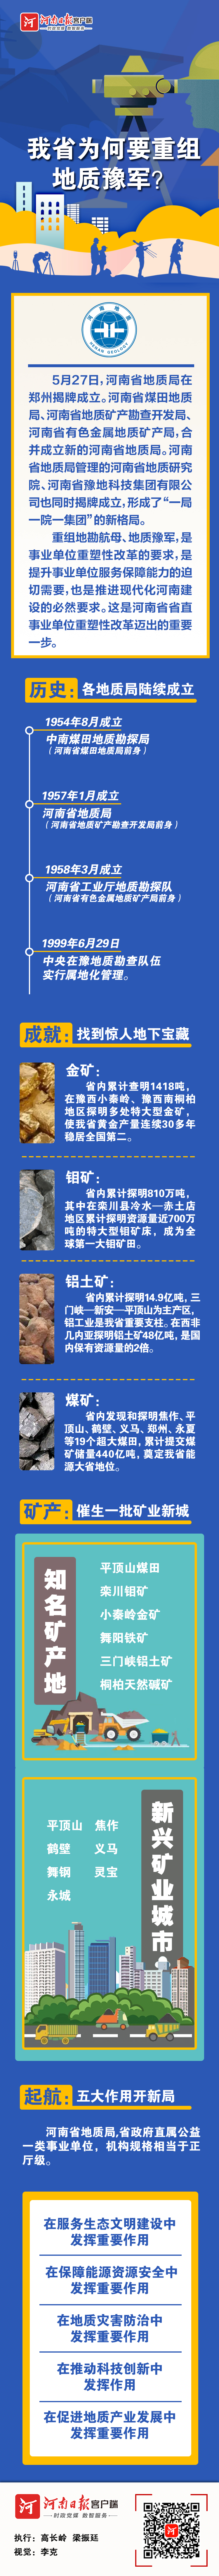 河南省地质局揭牌成立 形成了“一局一院一集团”的新格局